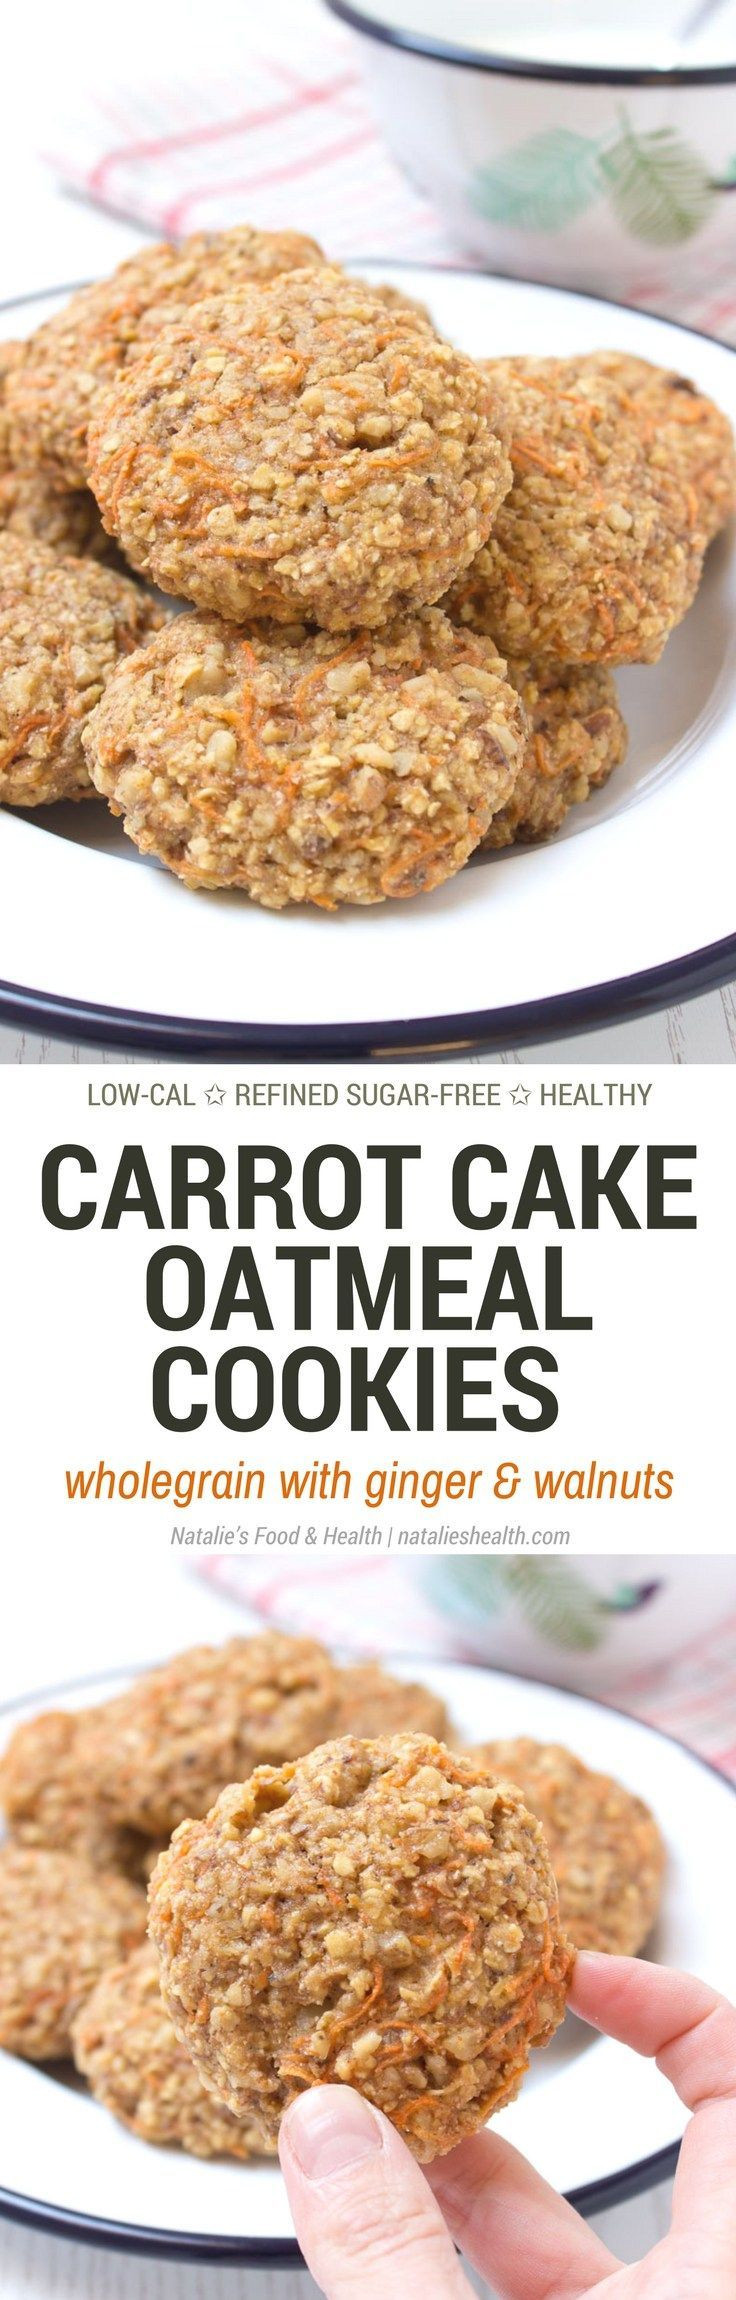 Low Fat Low Sugar Oatmeal Cookies
 Best 25 Low fat carrot cake ideas on Pinterest